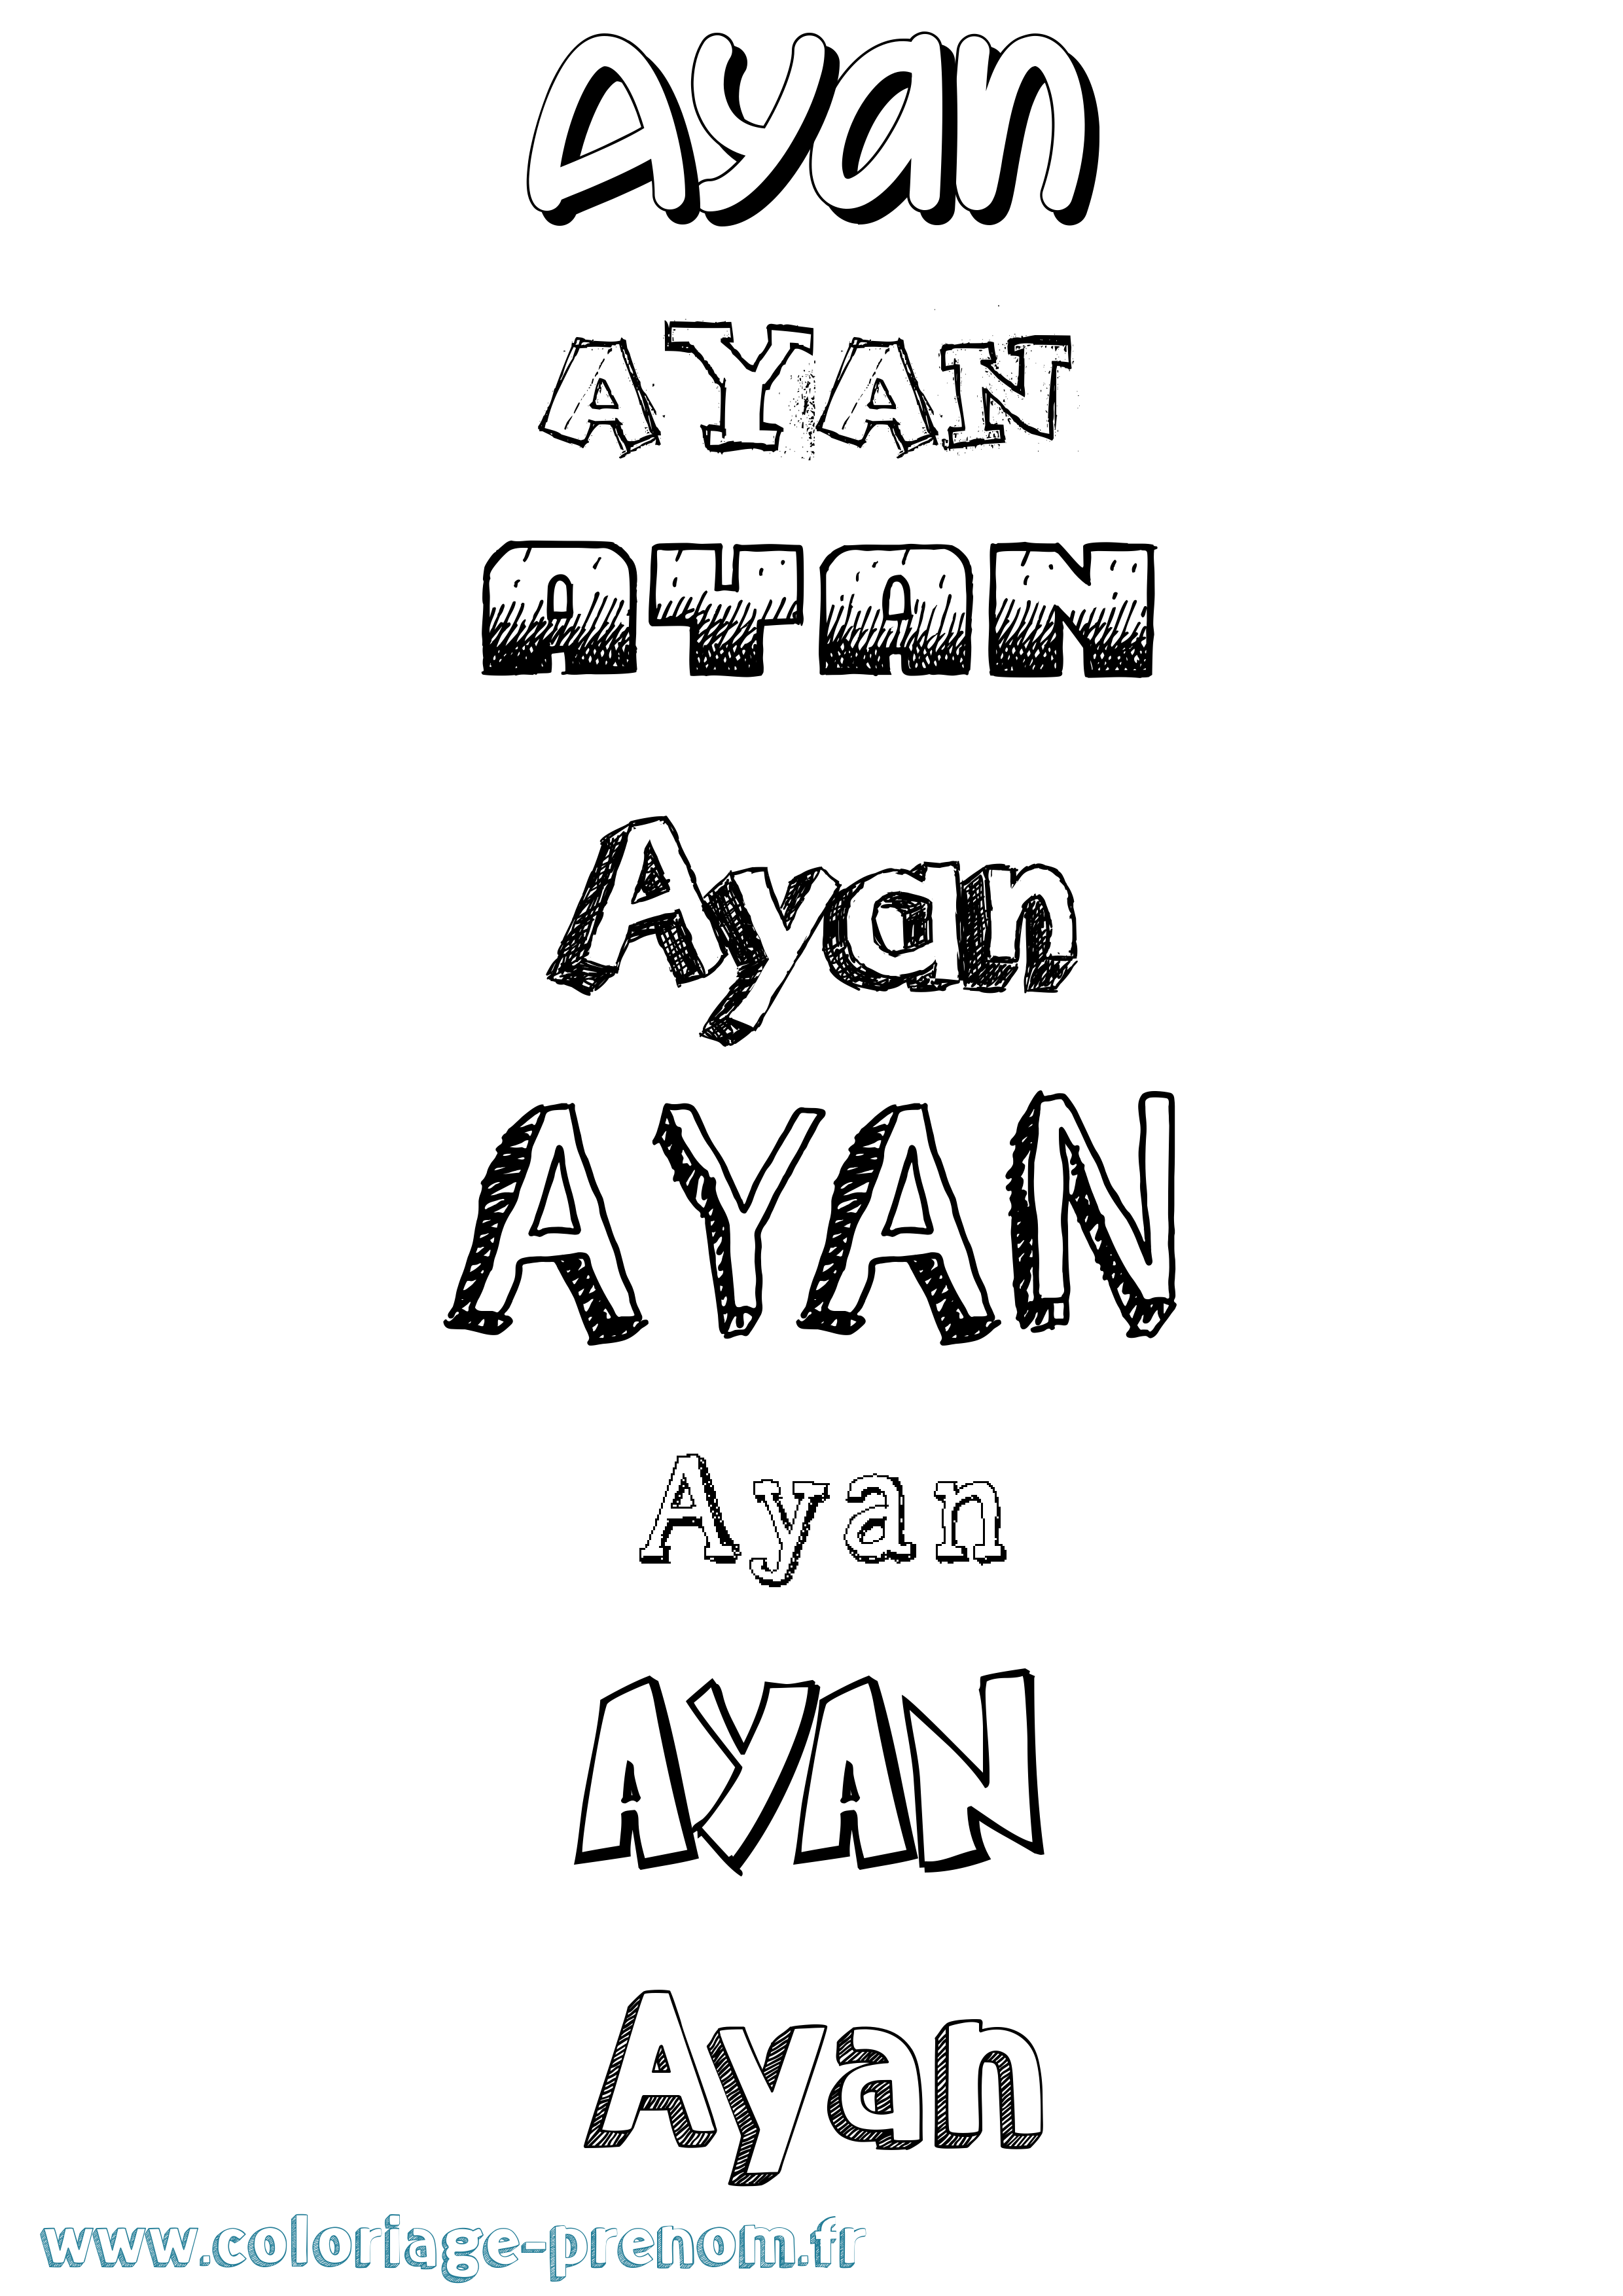 Coloriage prénom Ayan Dessiné